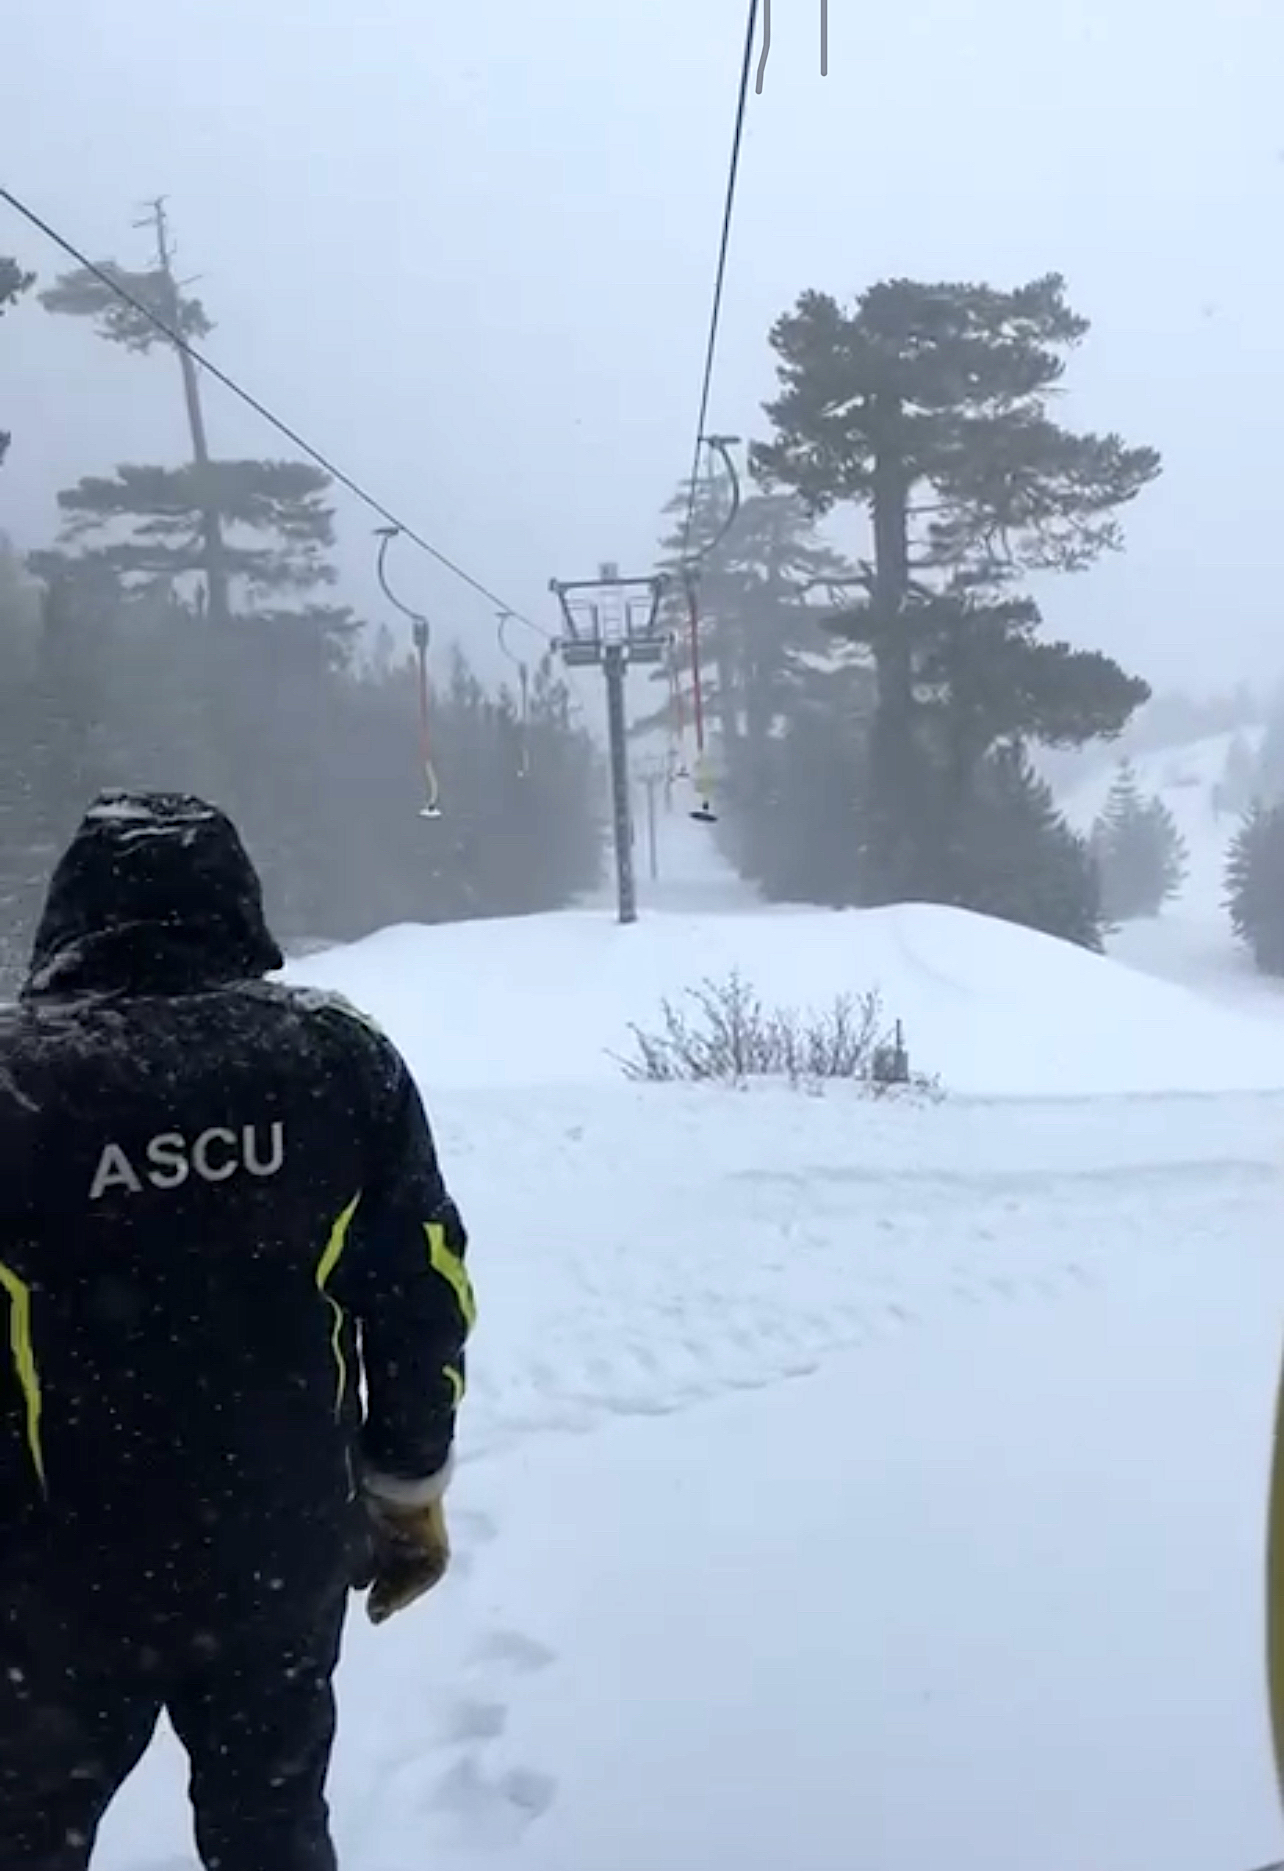 Stations de ski de Corse : Ascu ouvre ce samedi, Ghisoni et le Val d'Ese se préparent